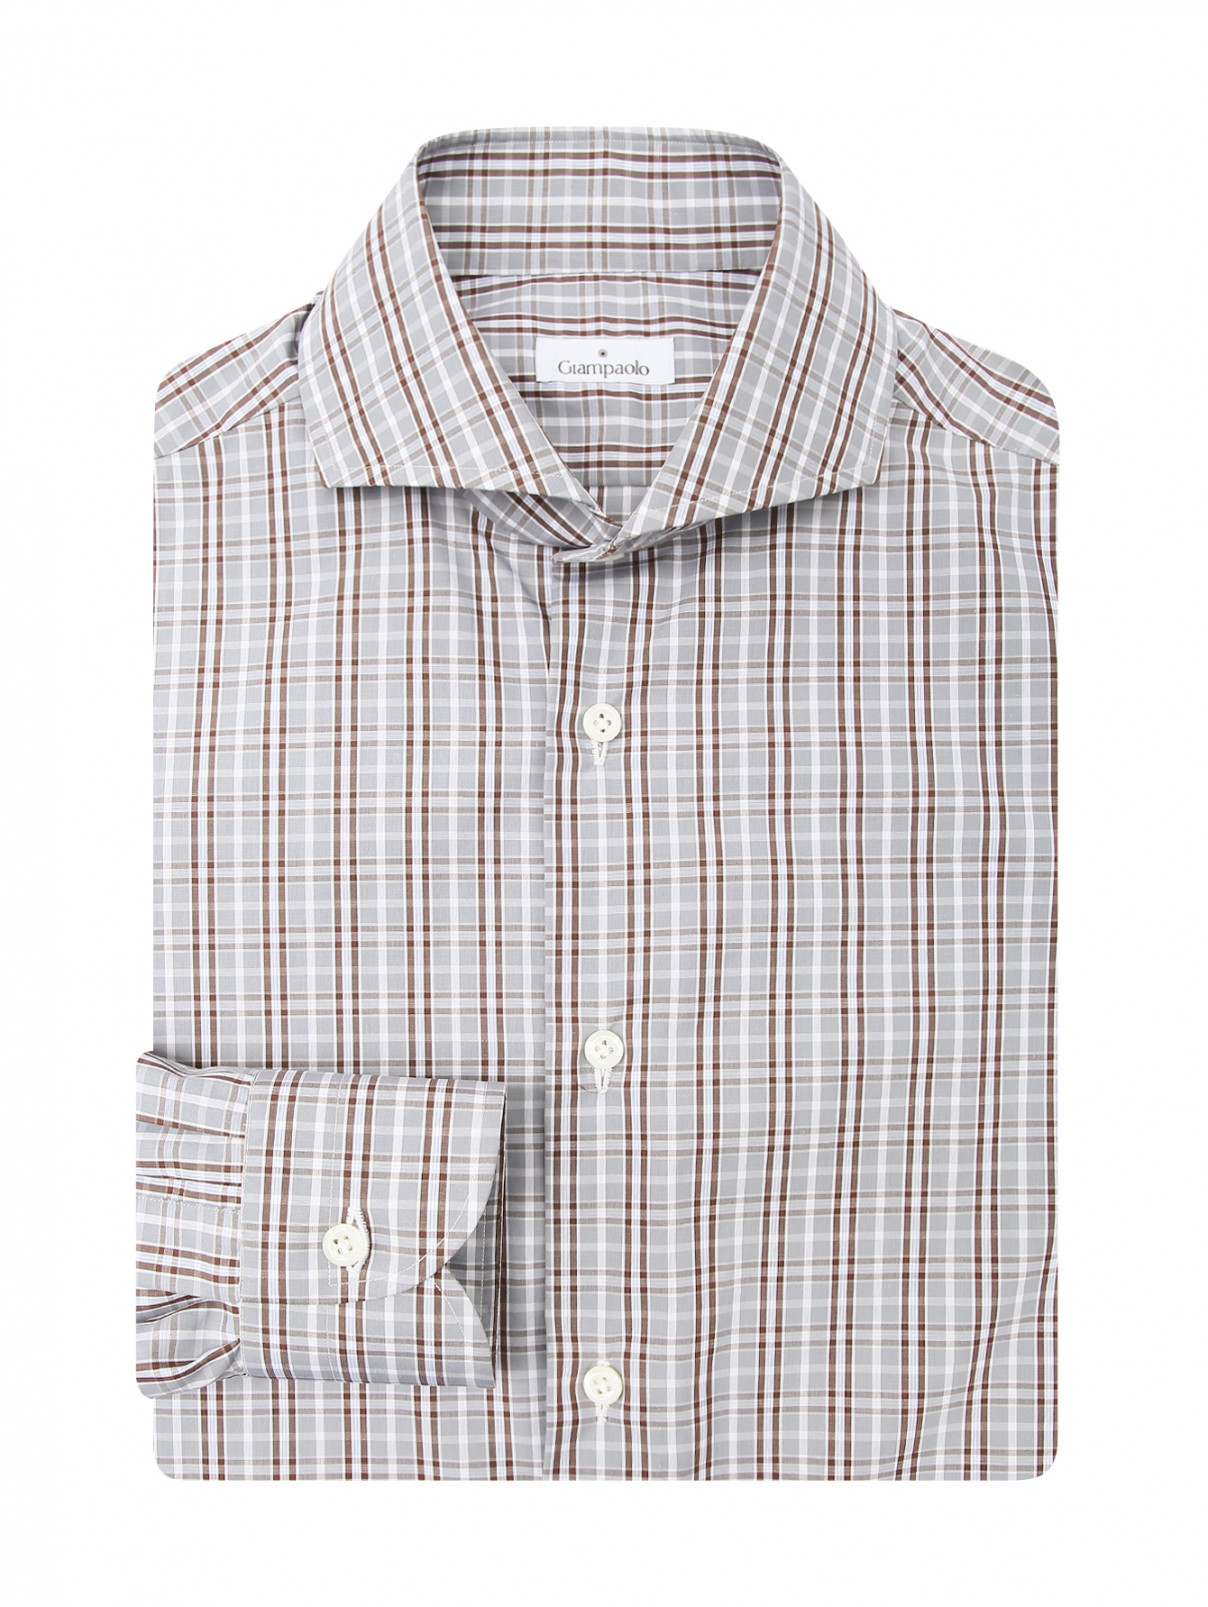 Рубашка из хлопка с узором клетка Giampaolo  –  Общий вид  – Цвет:  Серый